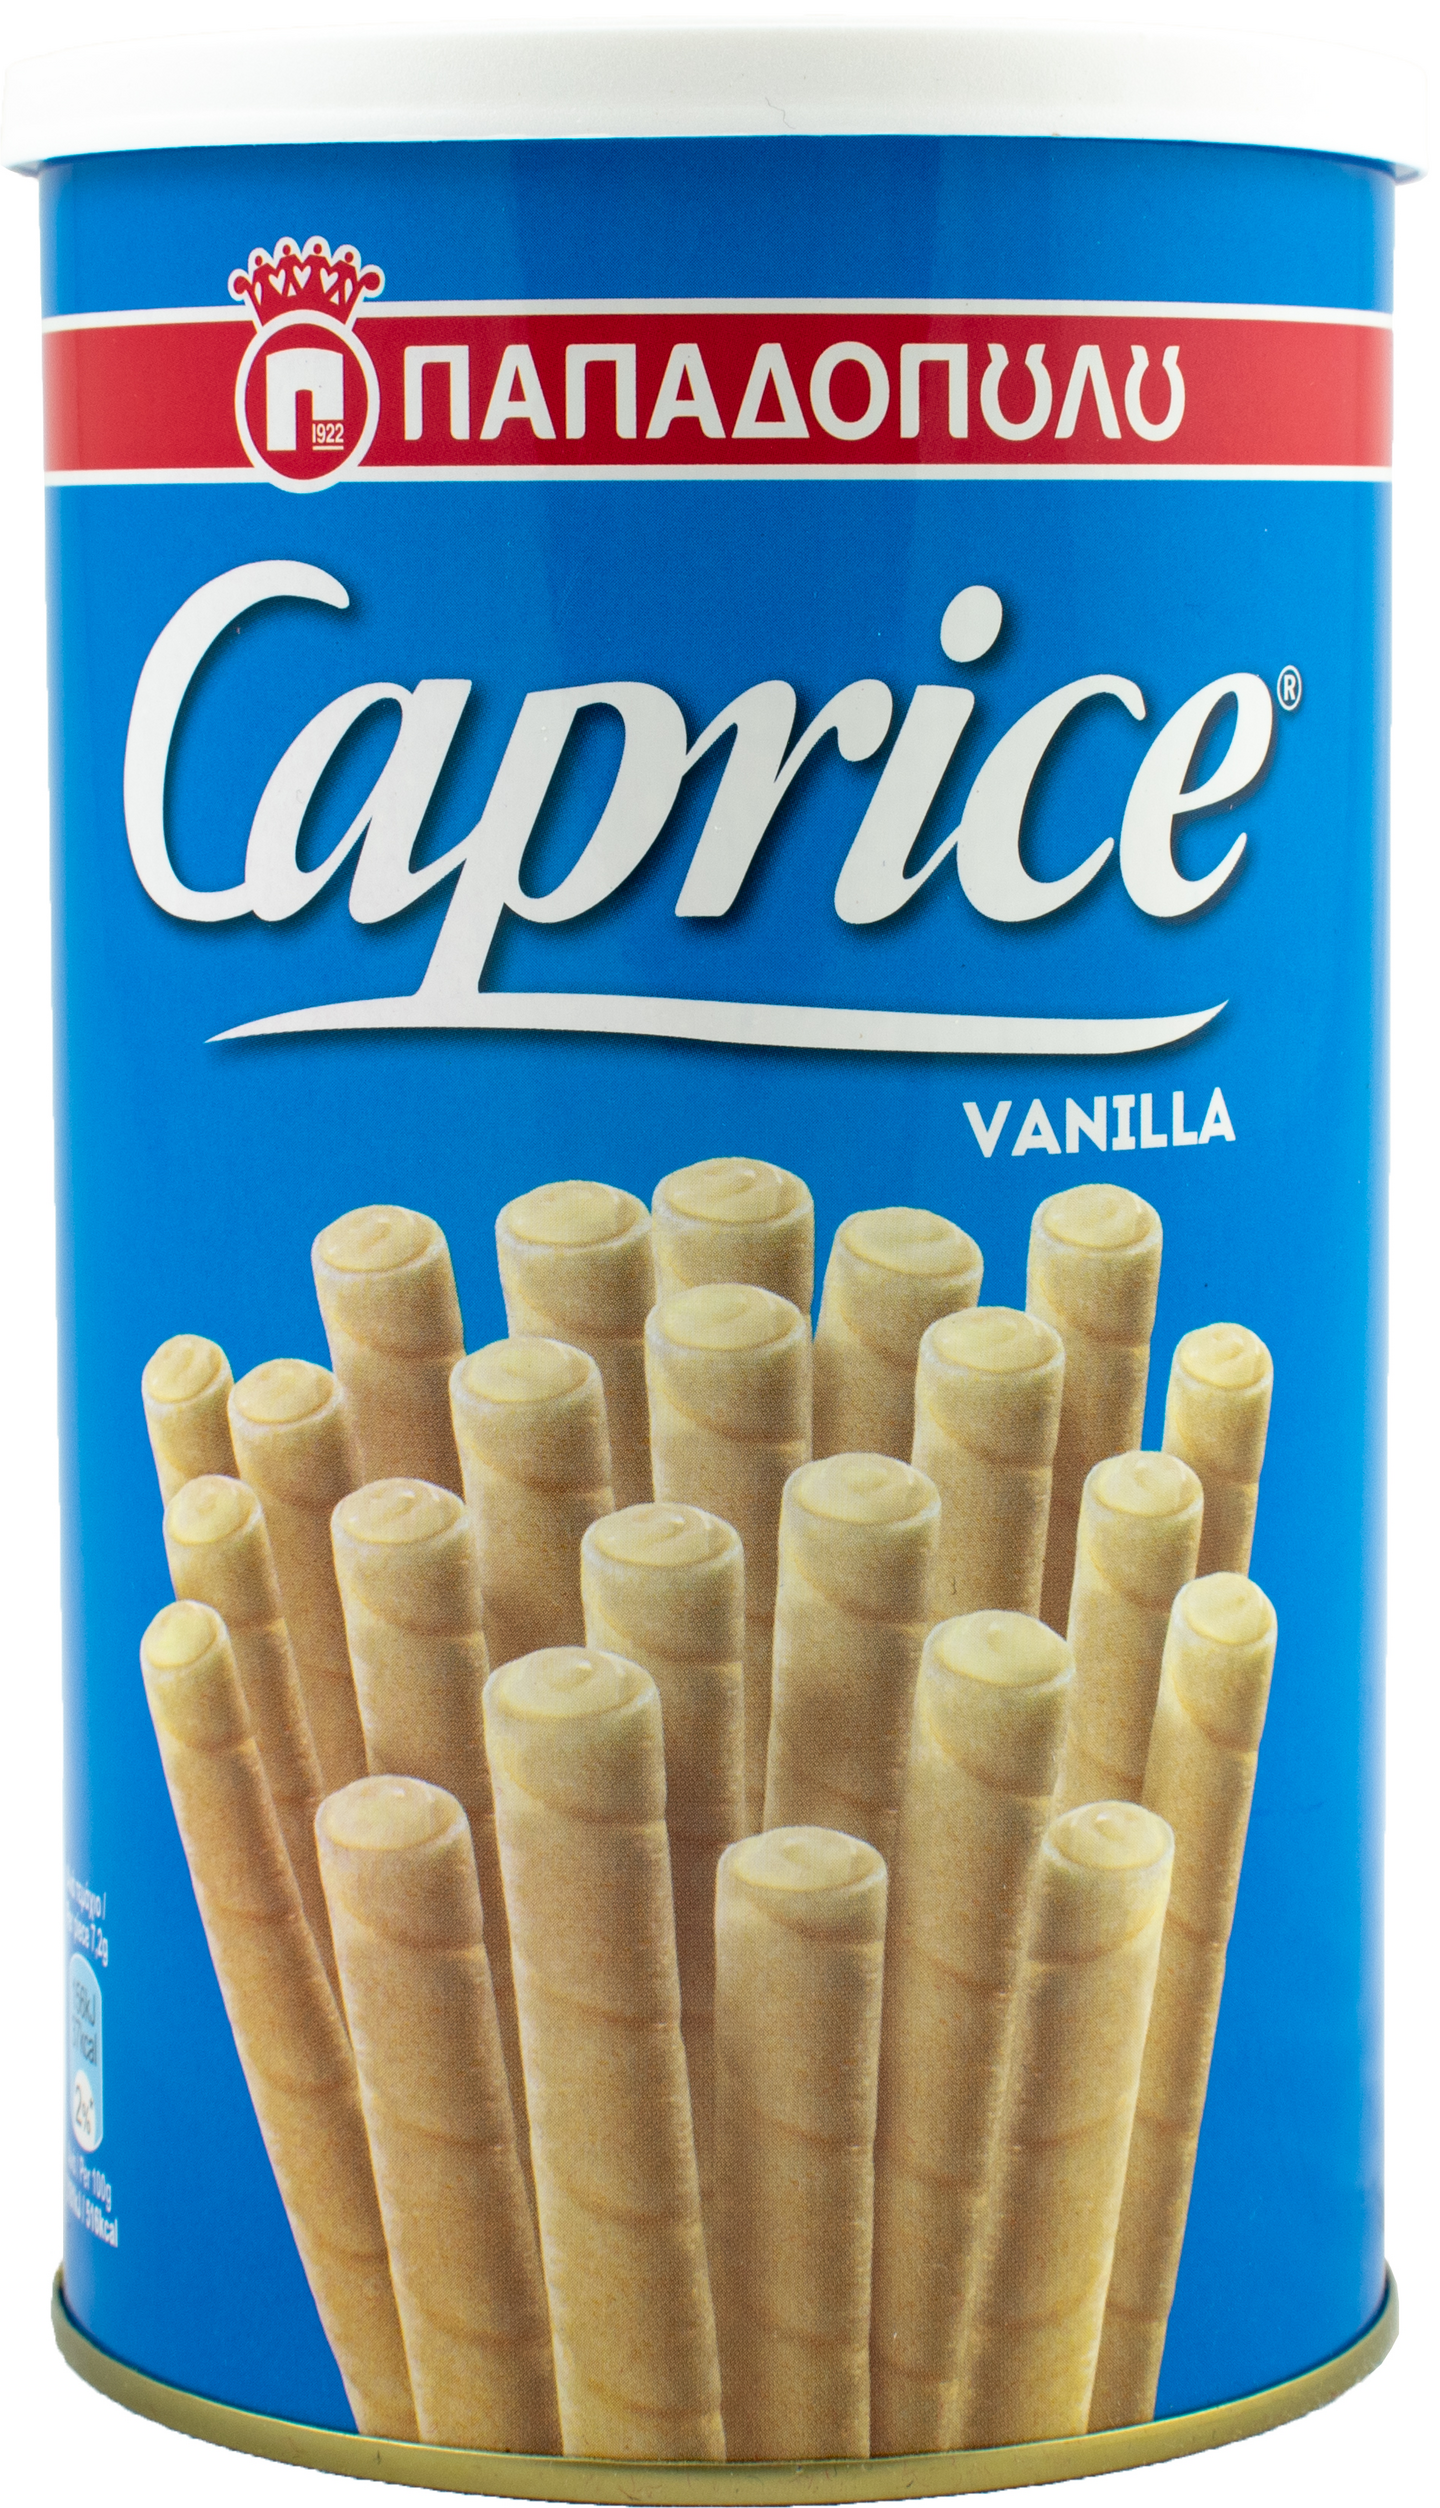 Caprice 250g vanilja kierrevohveli